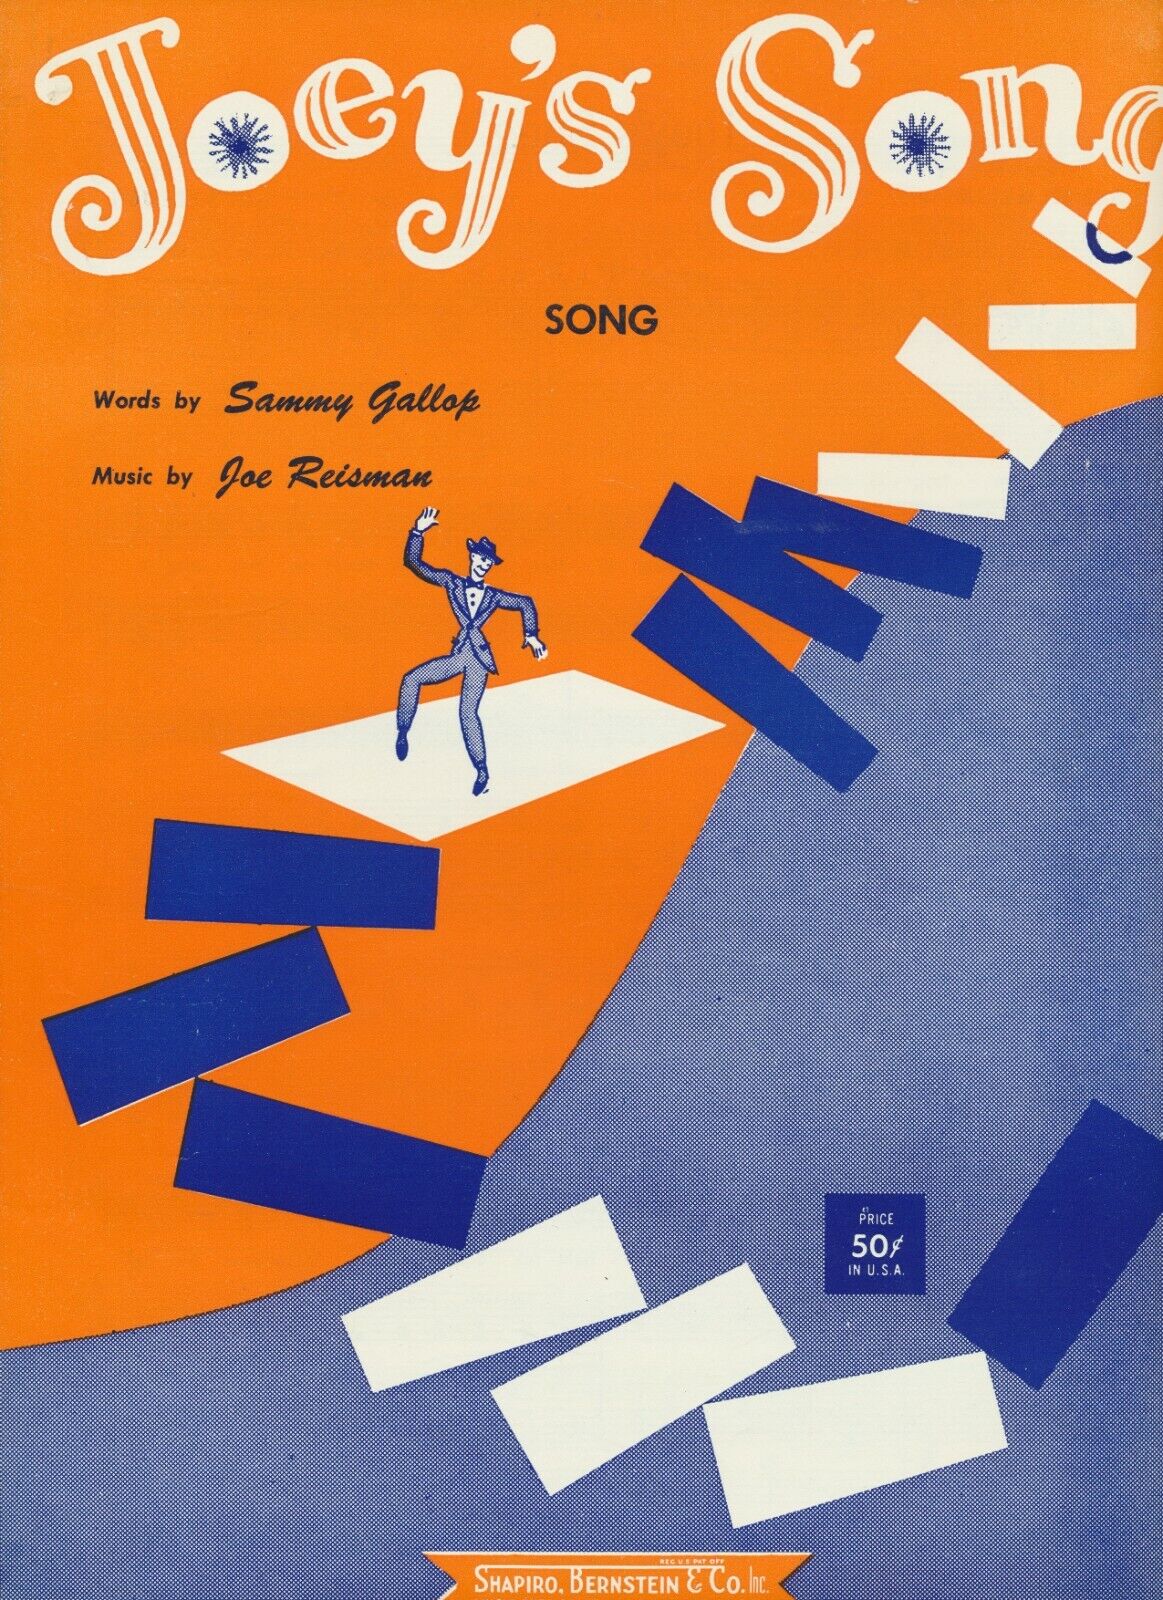 Joey's Song 1957 Vintage Sheet Music Sammy Gallop Joe Reisman Shapiro Bernstein